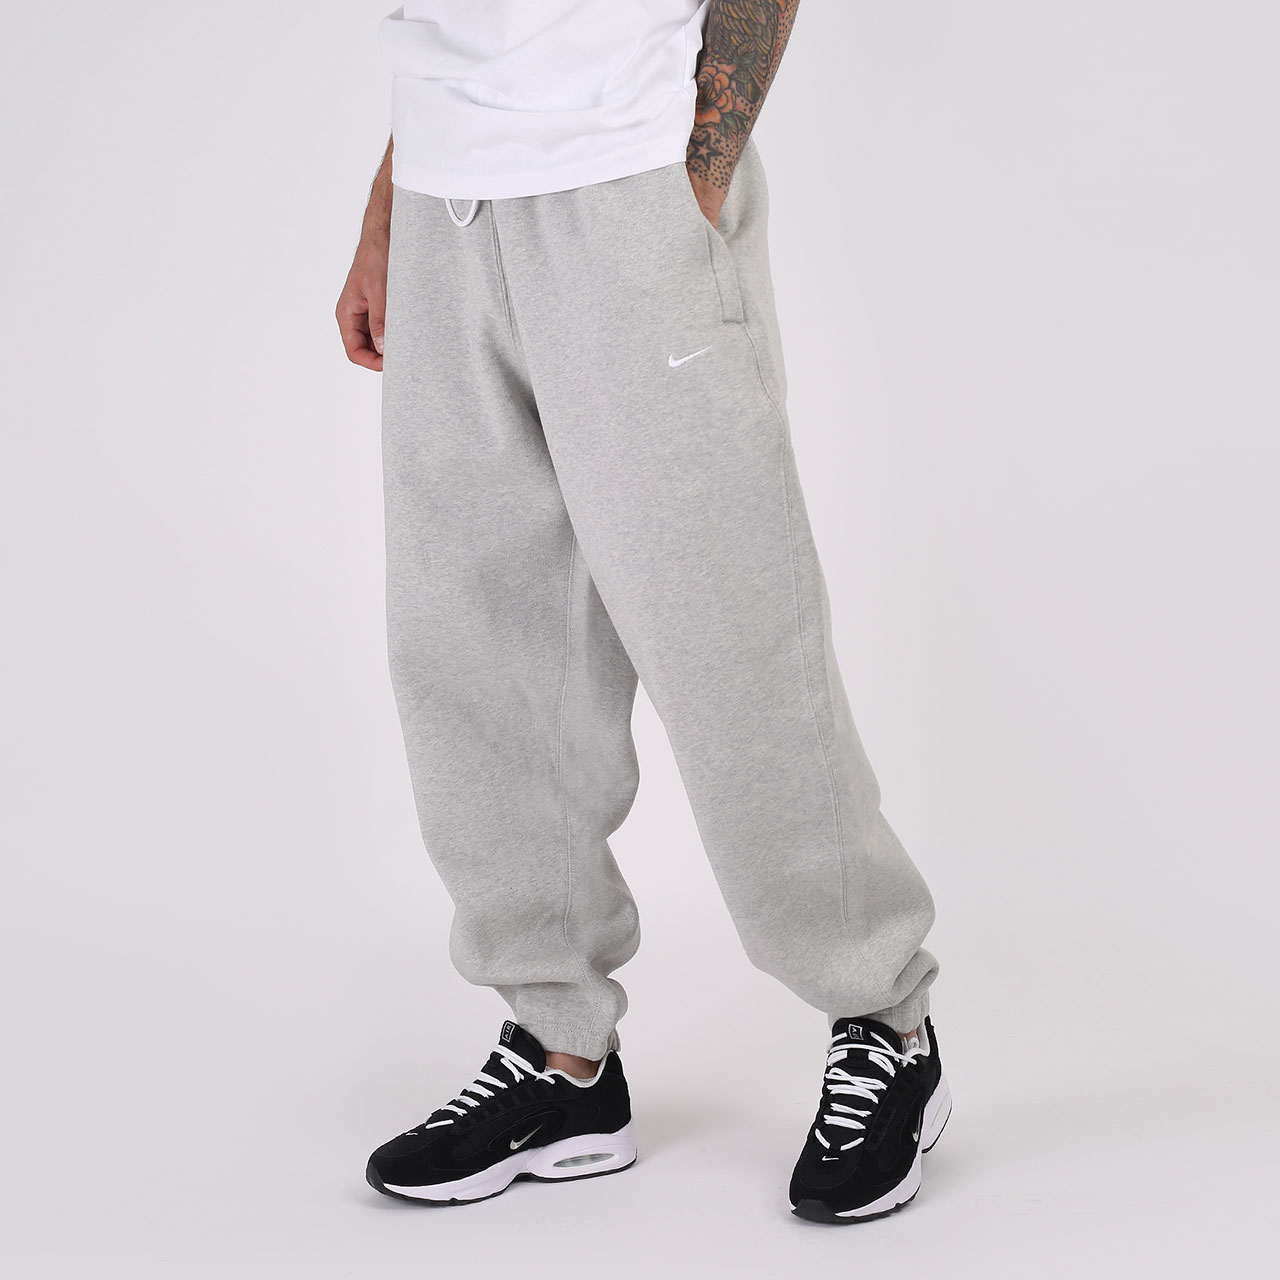 мужские серые брюки Nike NikeLab Fleece Pants CW5460-050 - цена, описание, фото 1